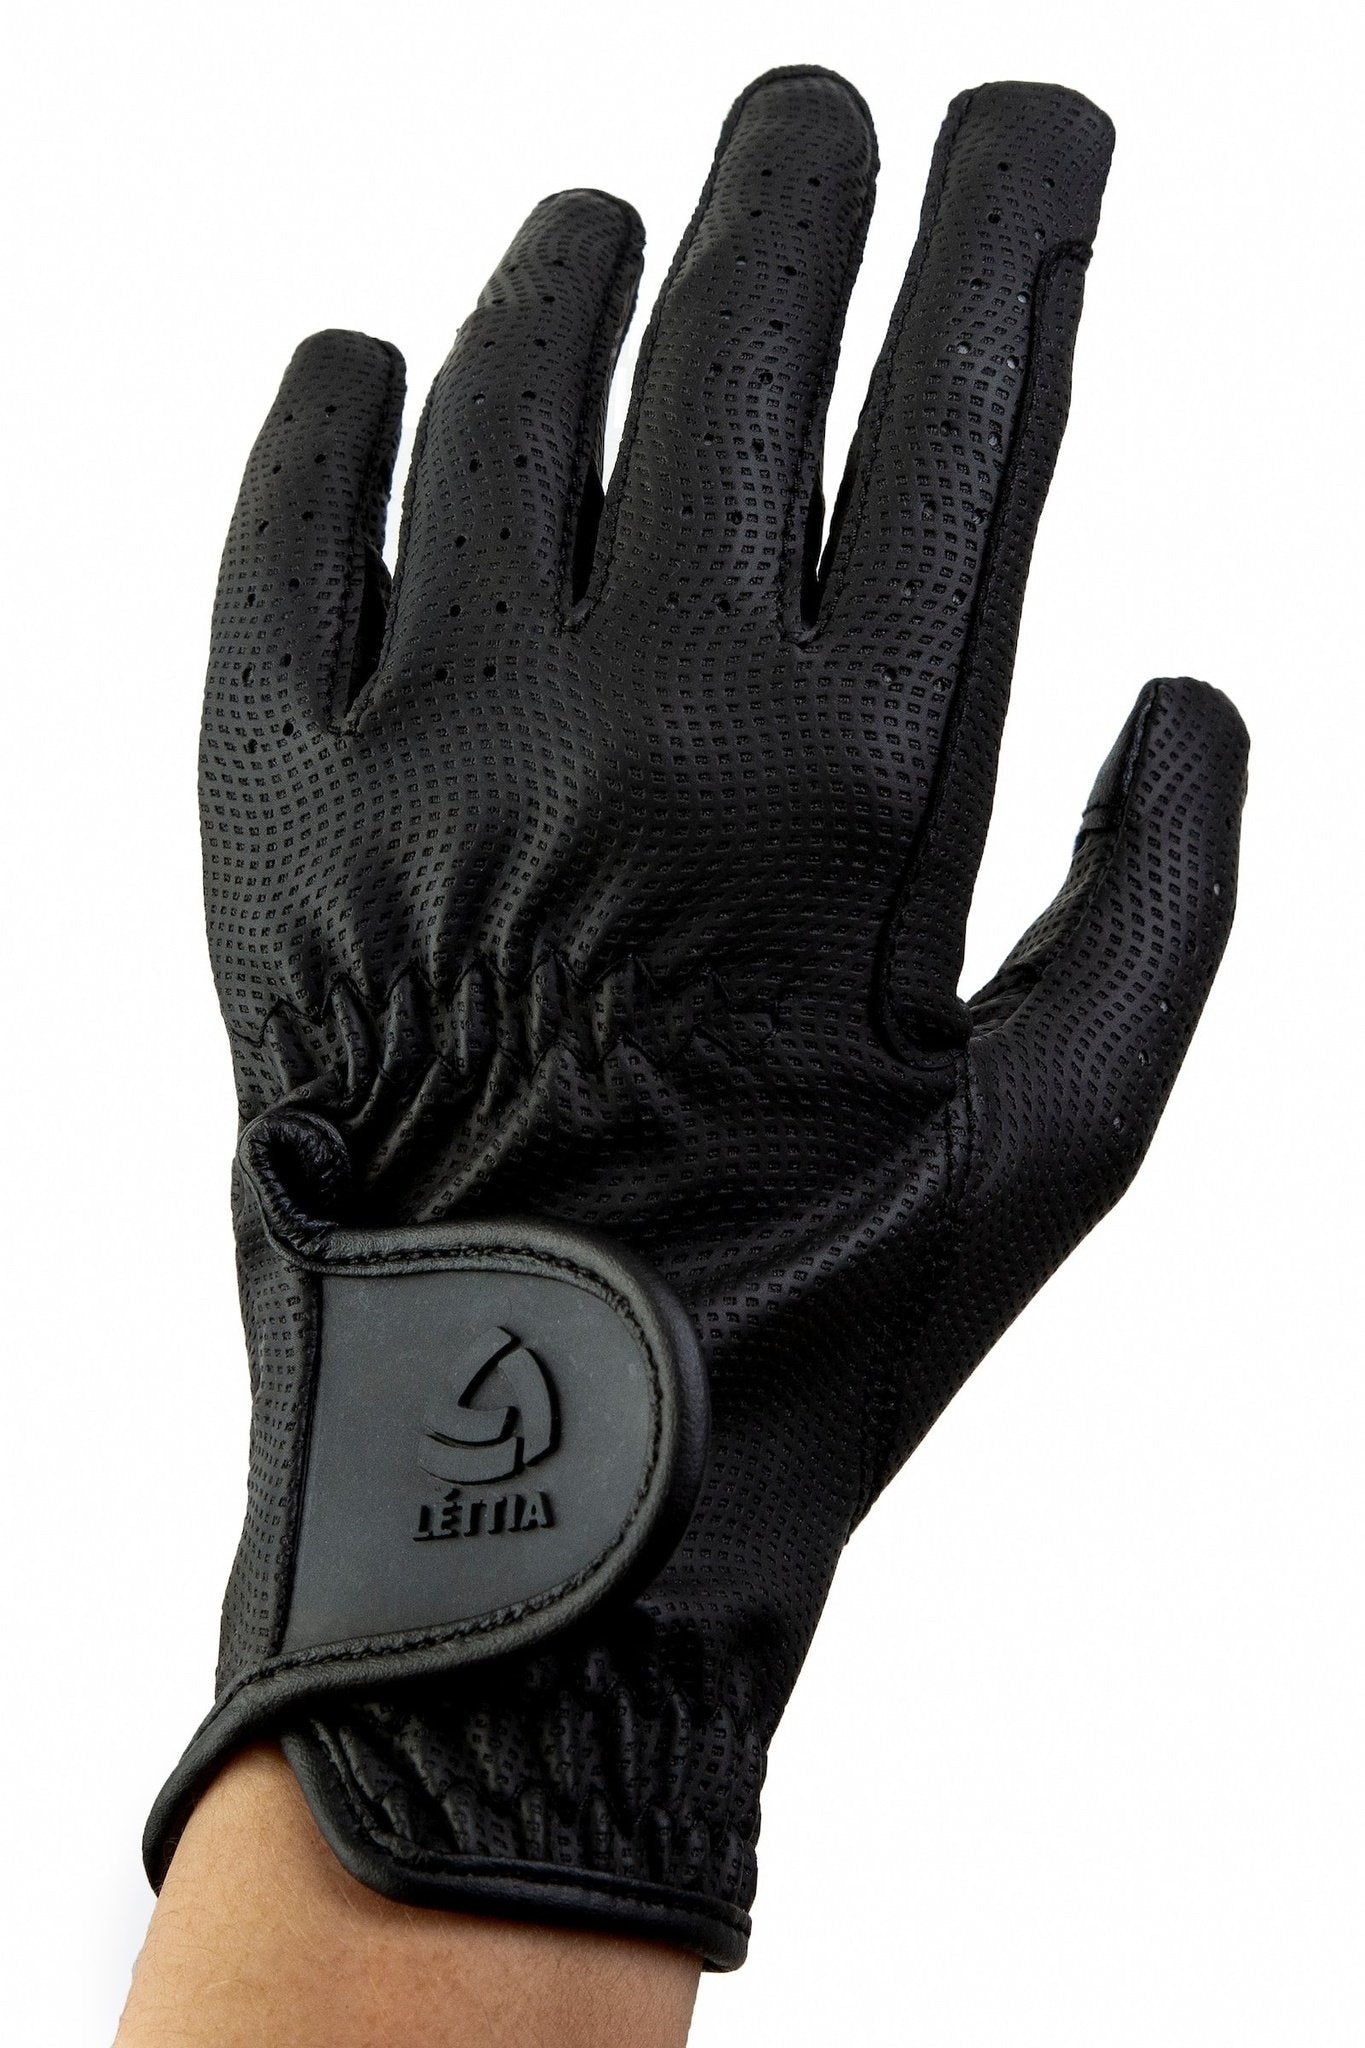 Lettia Ladies Capri Glove - Breeches.com